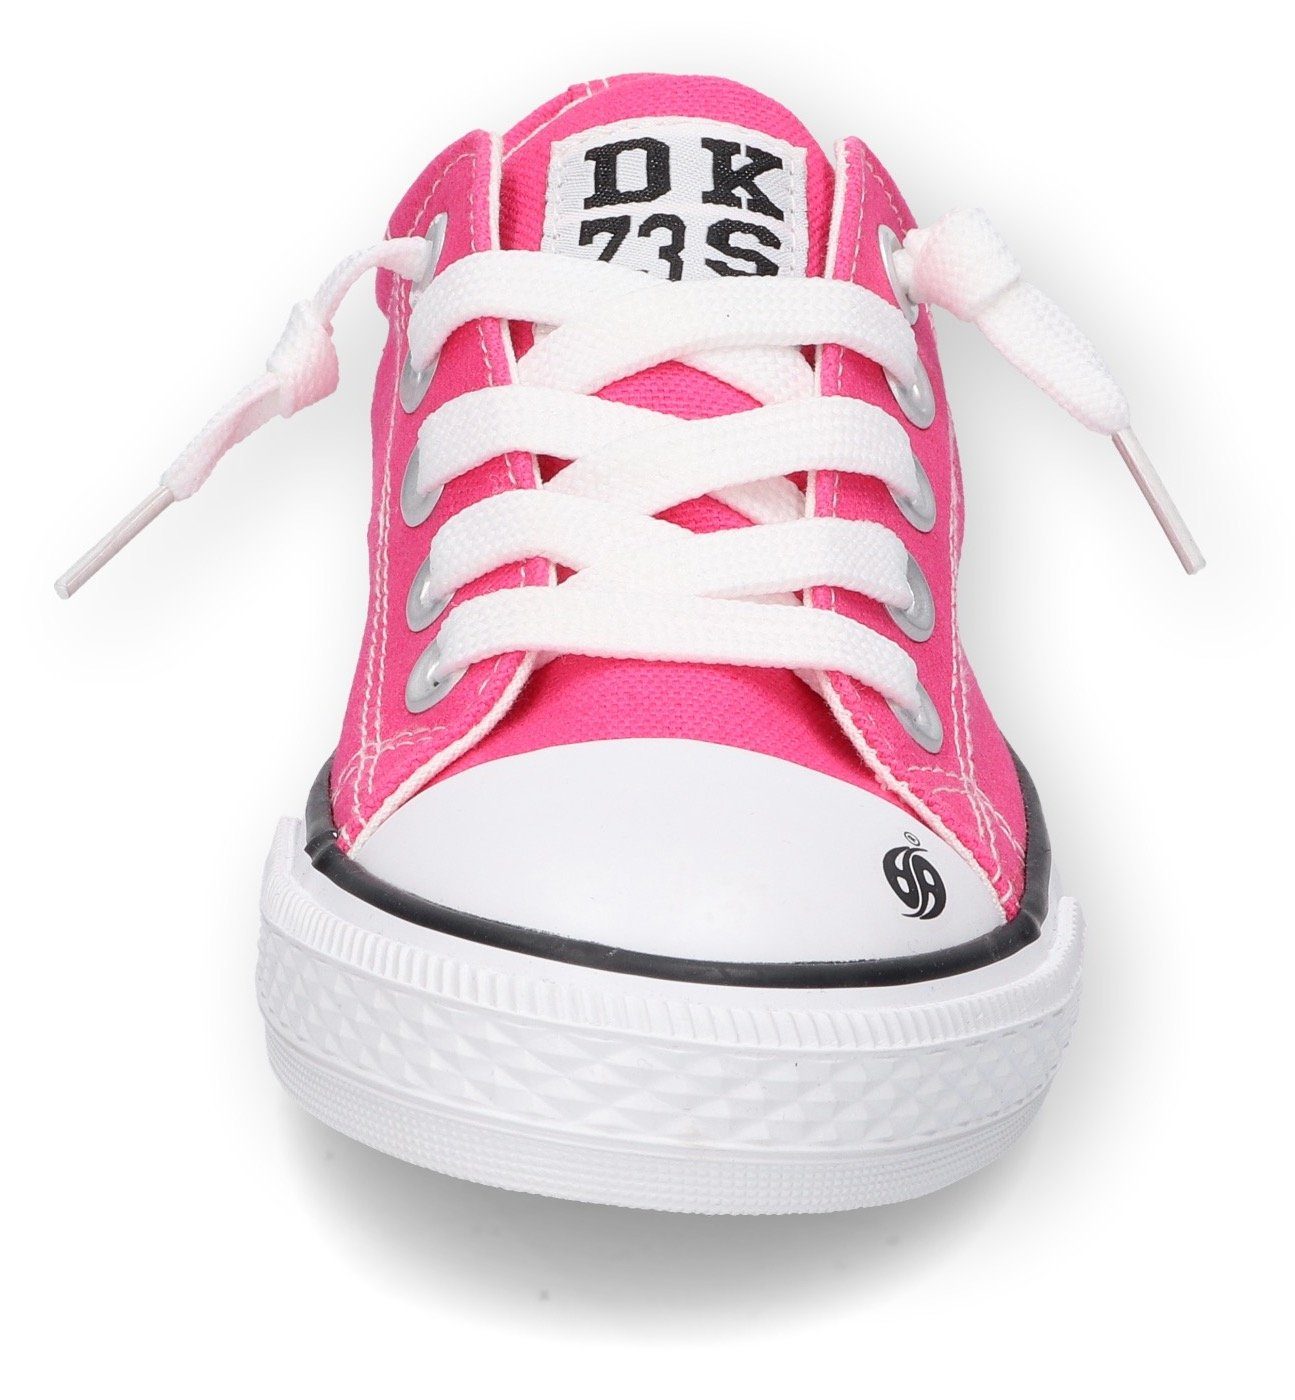 Dockers by Gerli klassischer Slip-On Optik pink in Sneaker